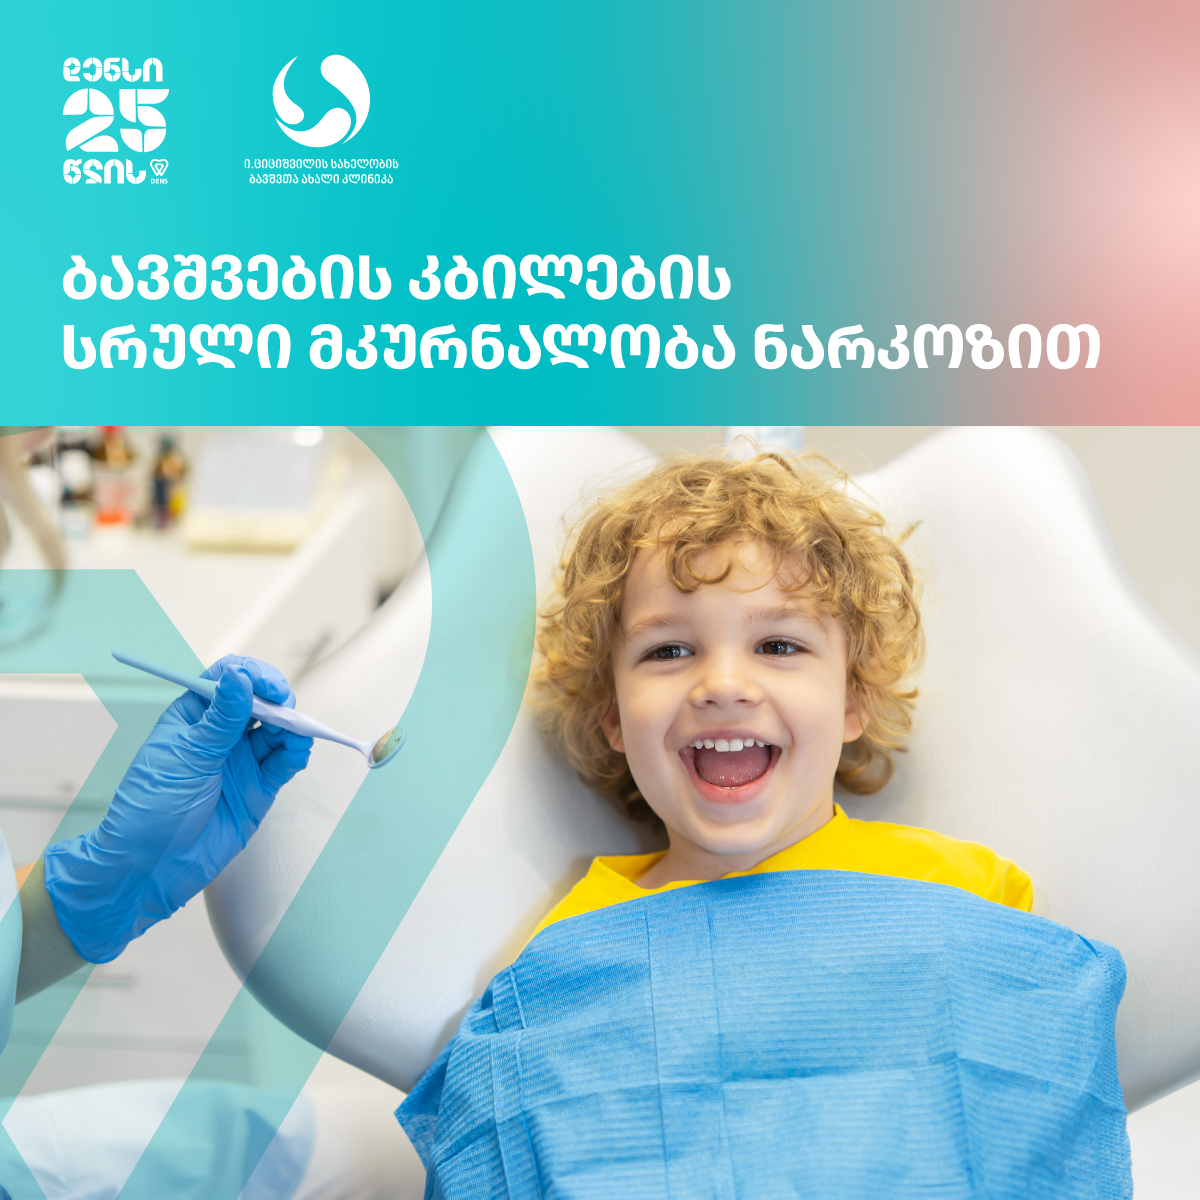 დილა ფორმულაზე – ბავშვთა სტომატოლოგიური კაბინეტი ციციშვილის კლინიკაში